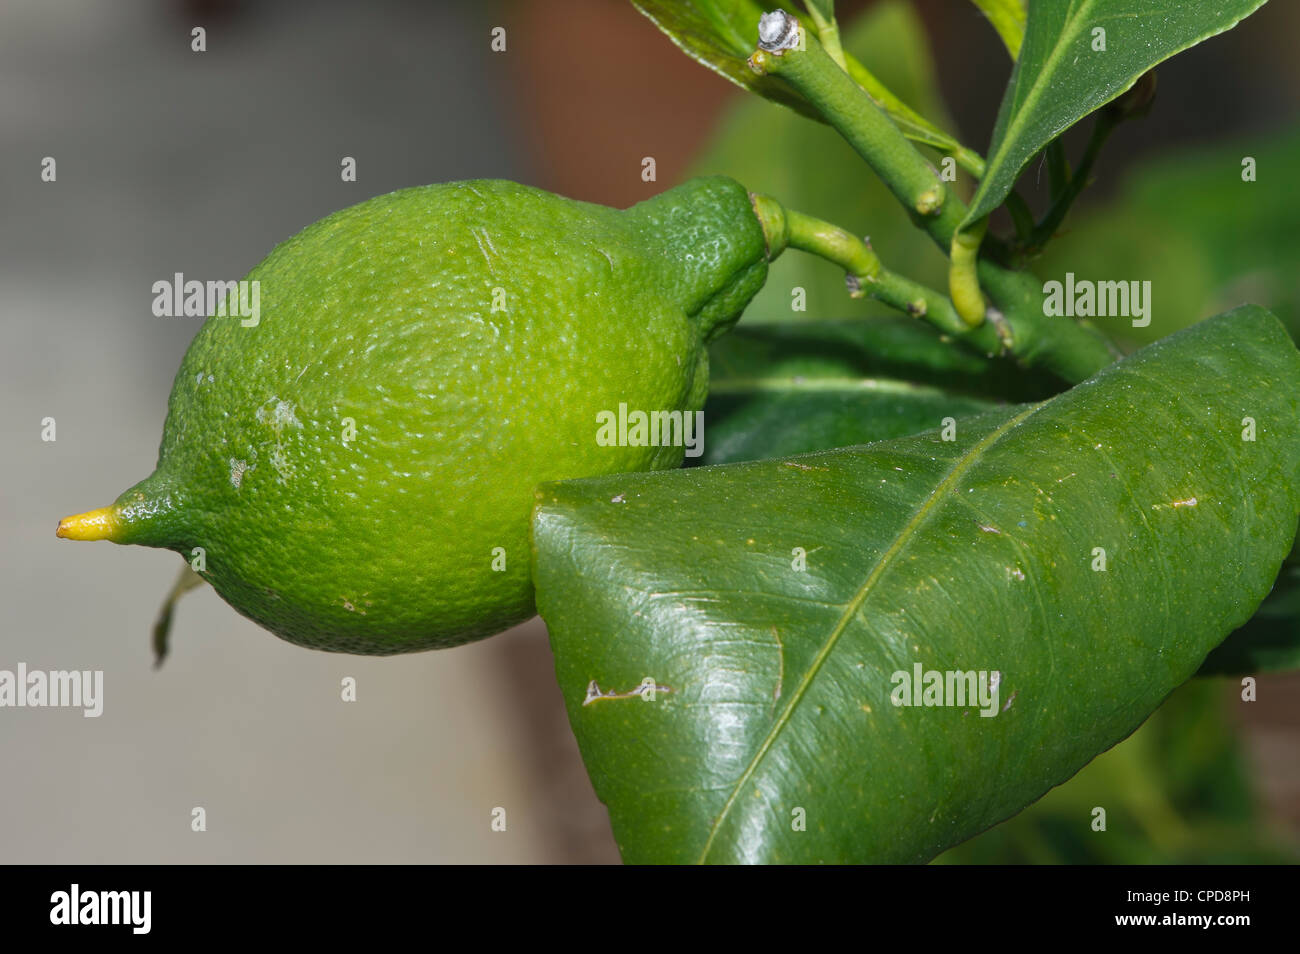 lemon among the leaves Stock Photo